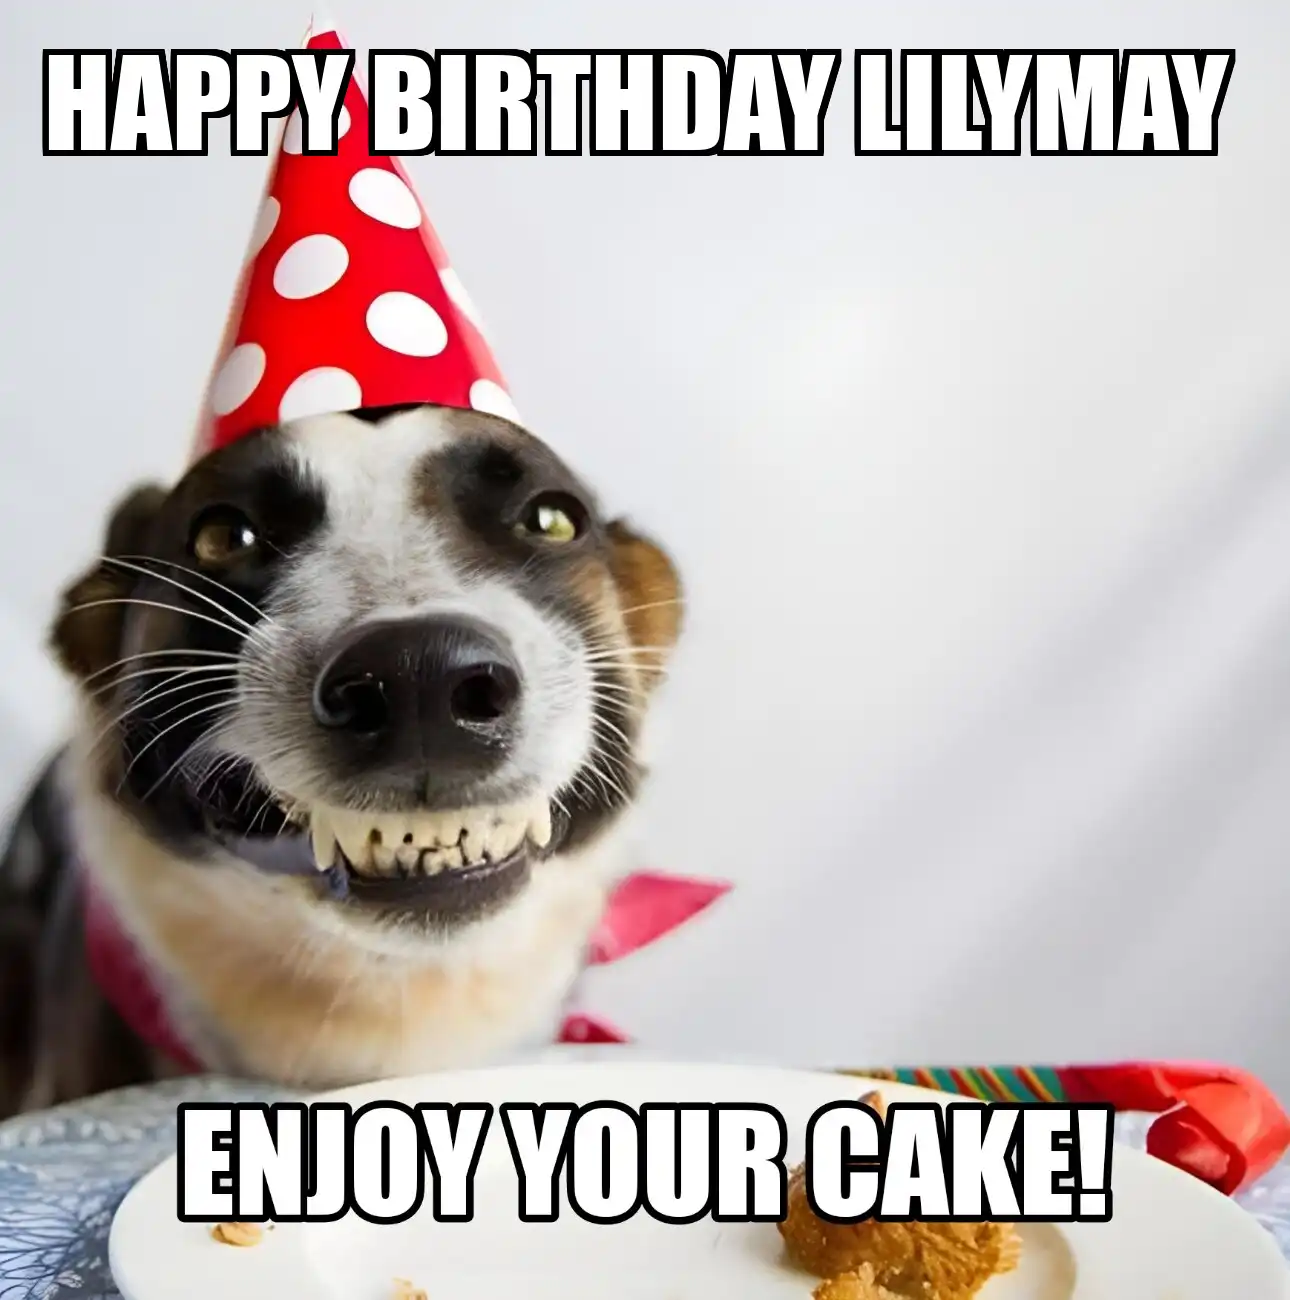 Happy Birthday Lilymay Enjoy Your Cake Dog Meme